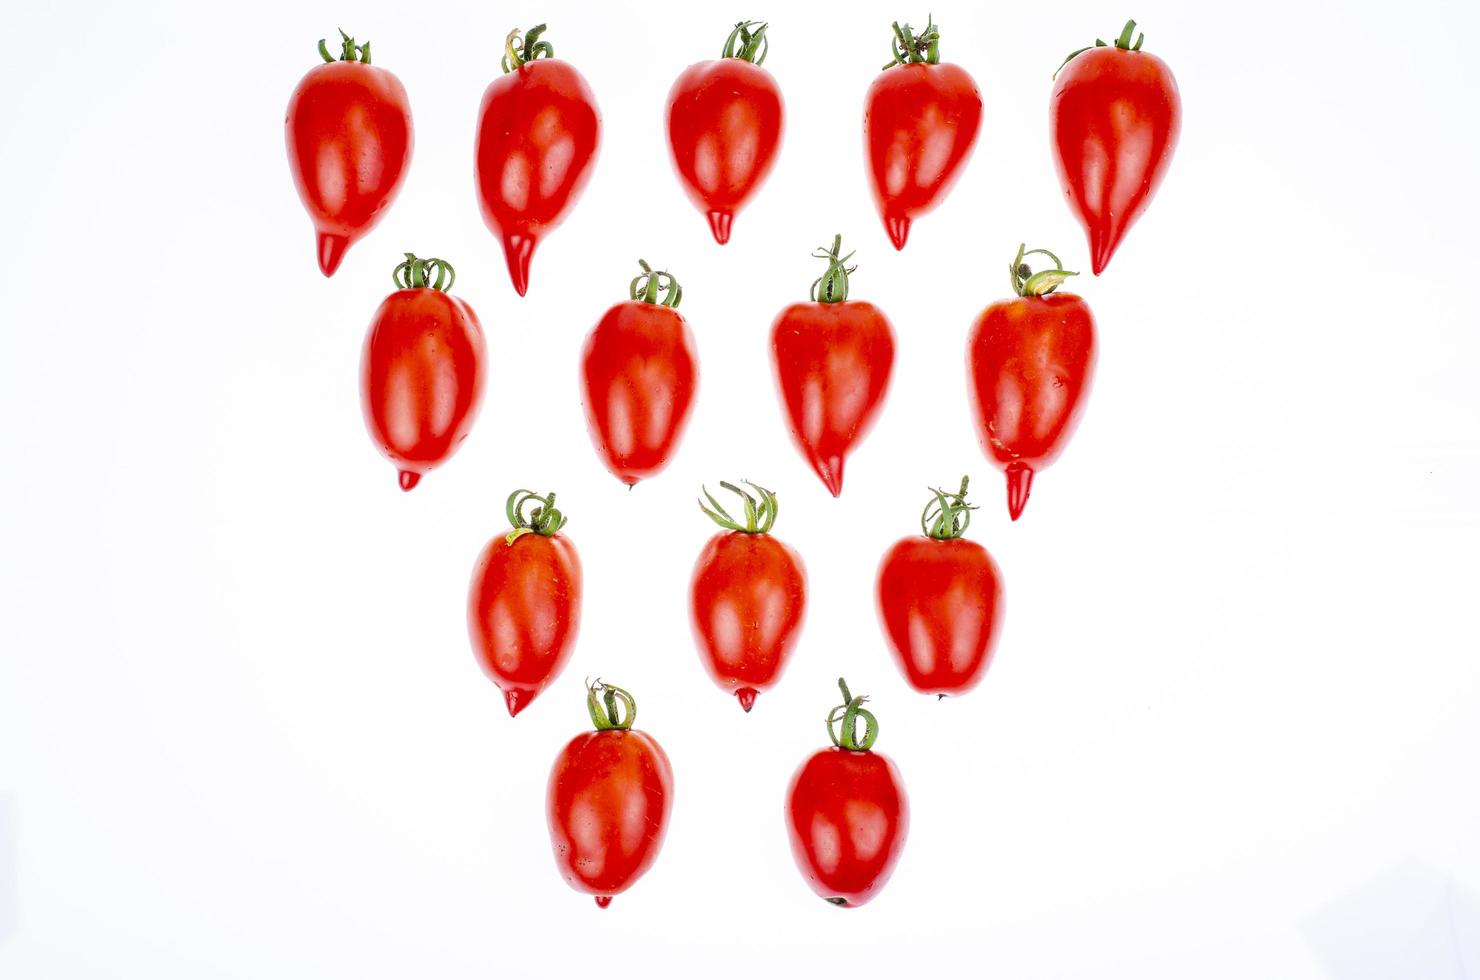 patrón de alimentos, fondo - tomates rojos aislados en blanco. foto de estudio.